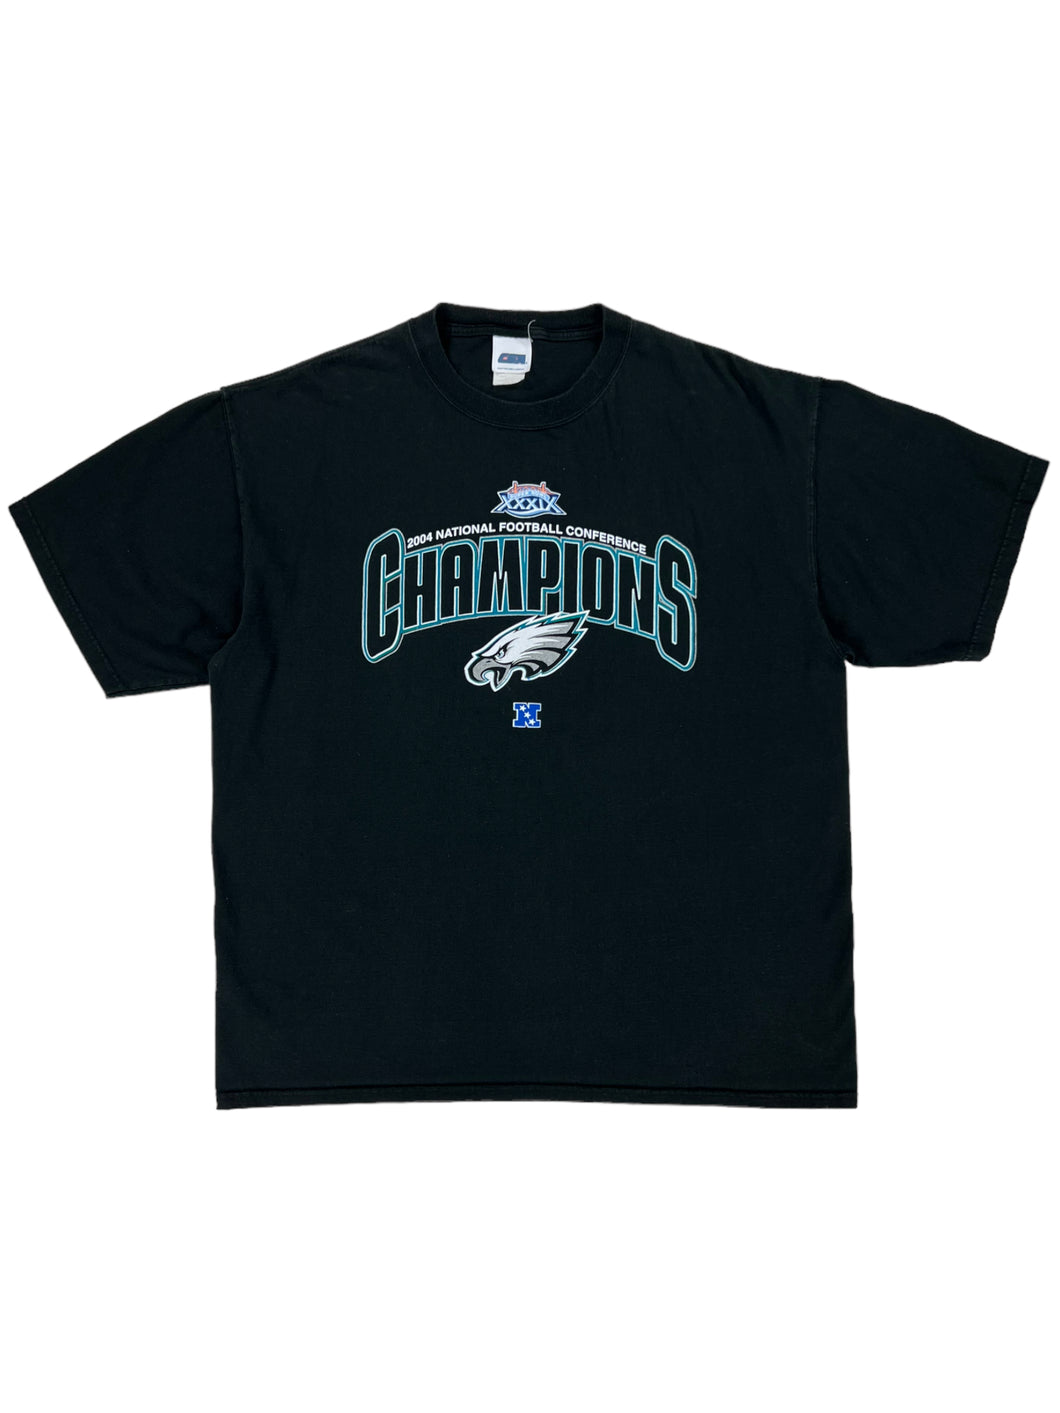 Vintage 2004 CSA Philadelphia Eagles NFC Champions tee (XL)